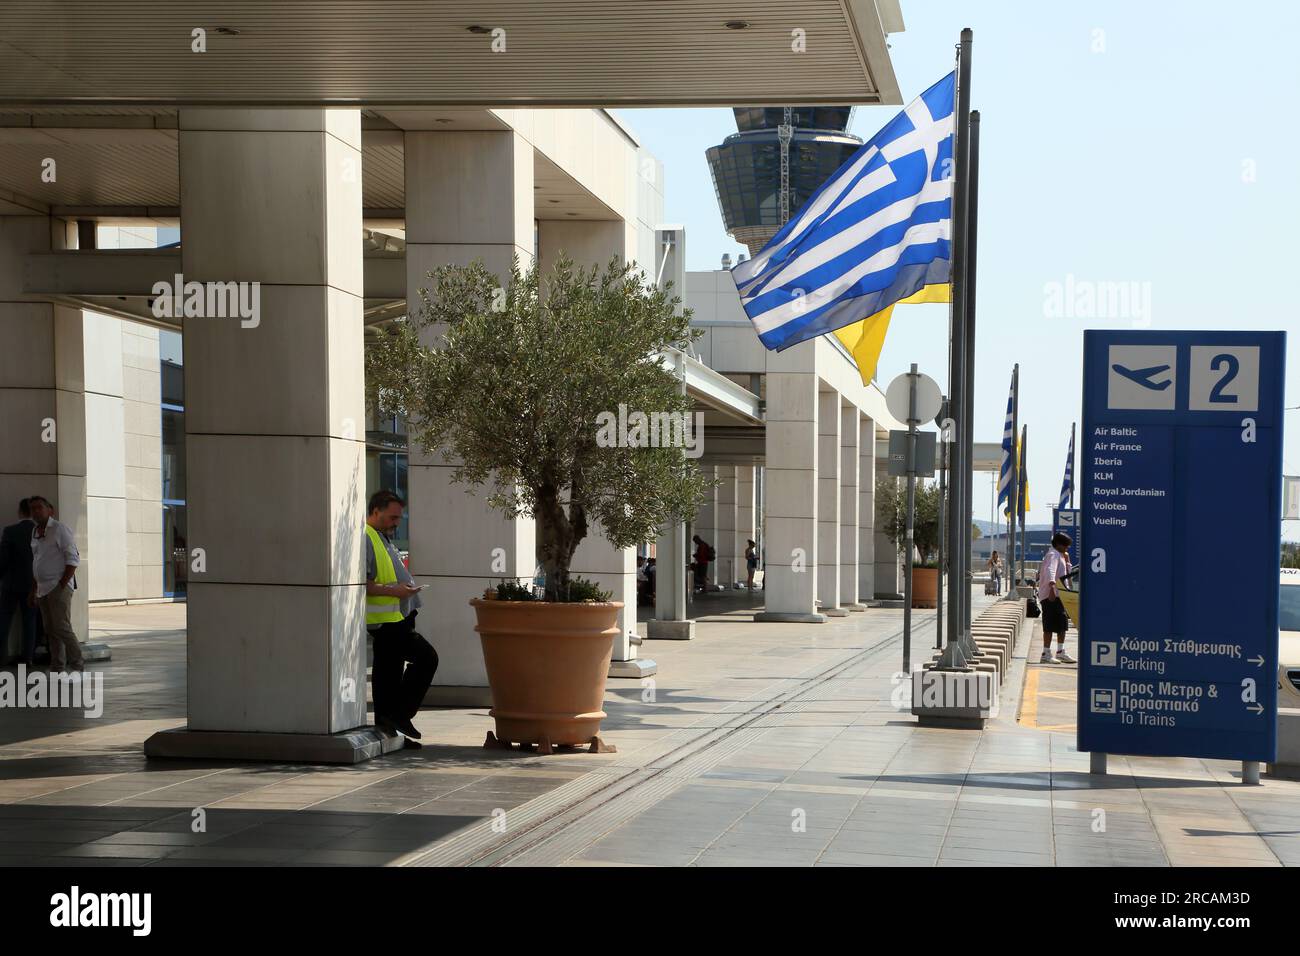 Athènes Grèce aéroport international d'Athènes (AIA) Eleftherios Venizelos Homme portant un gilet haute visibilité debout Olive Tree en pot à l'extérieur Banque D'Images